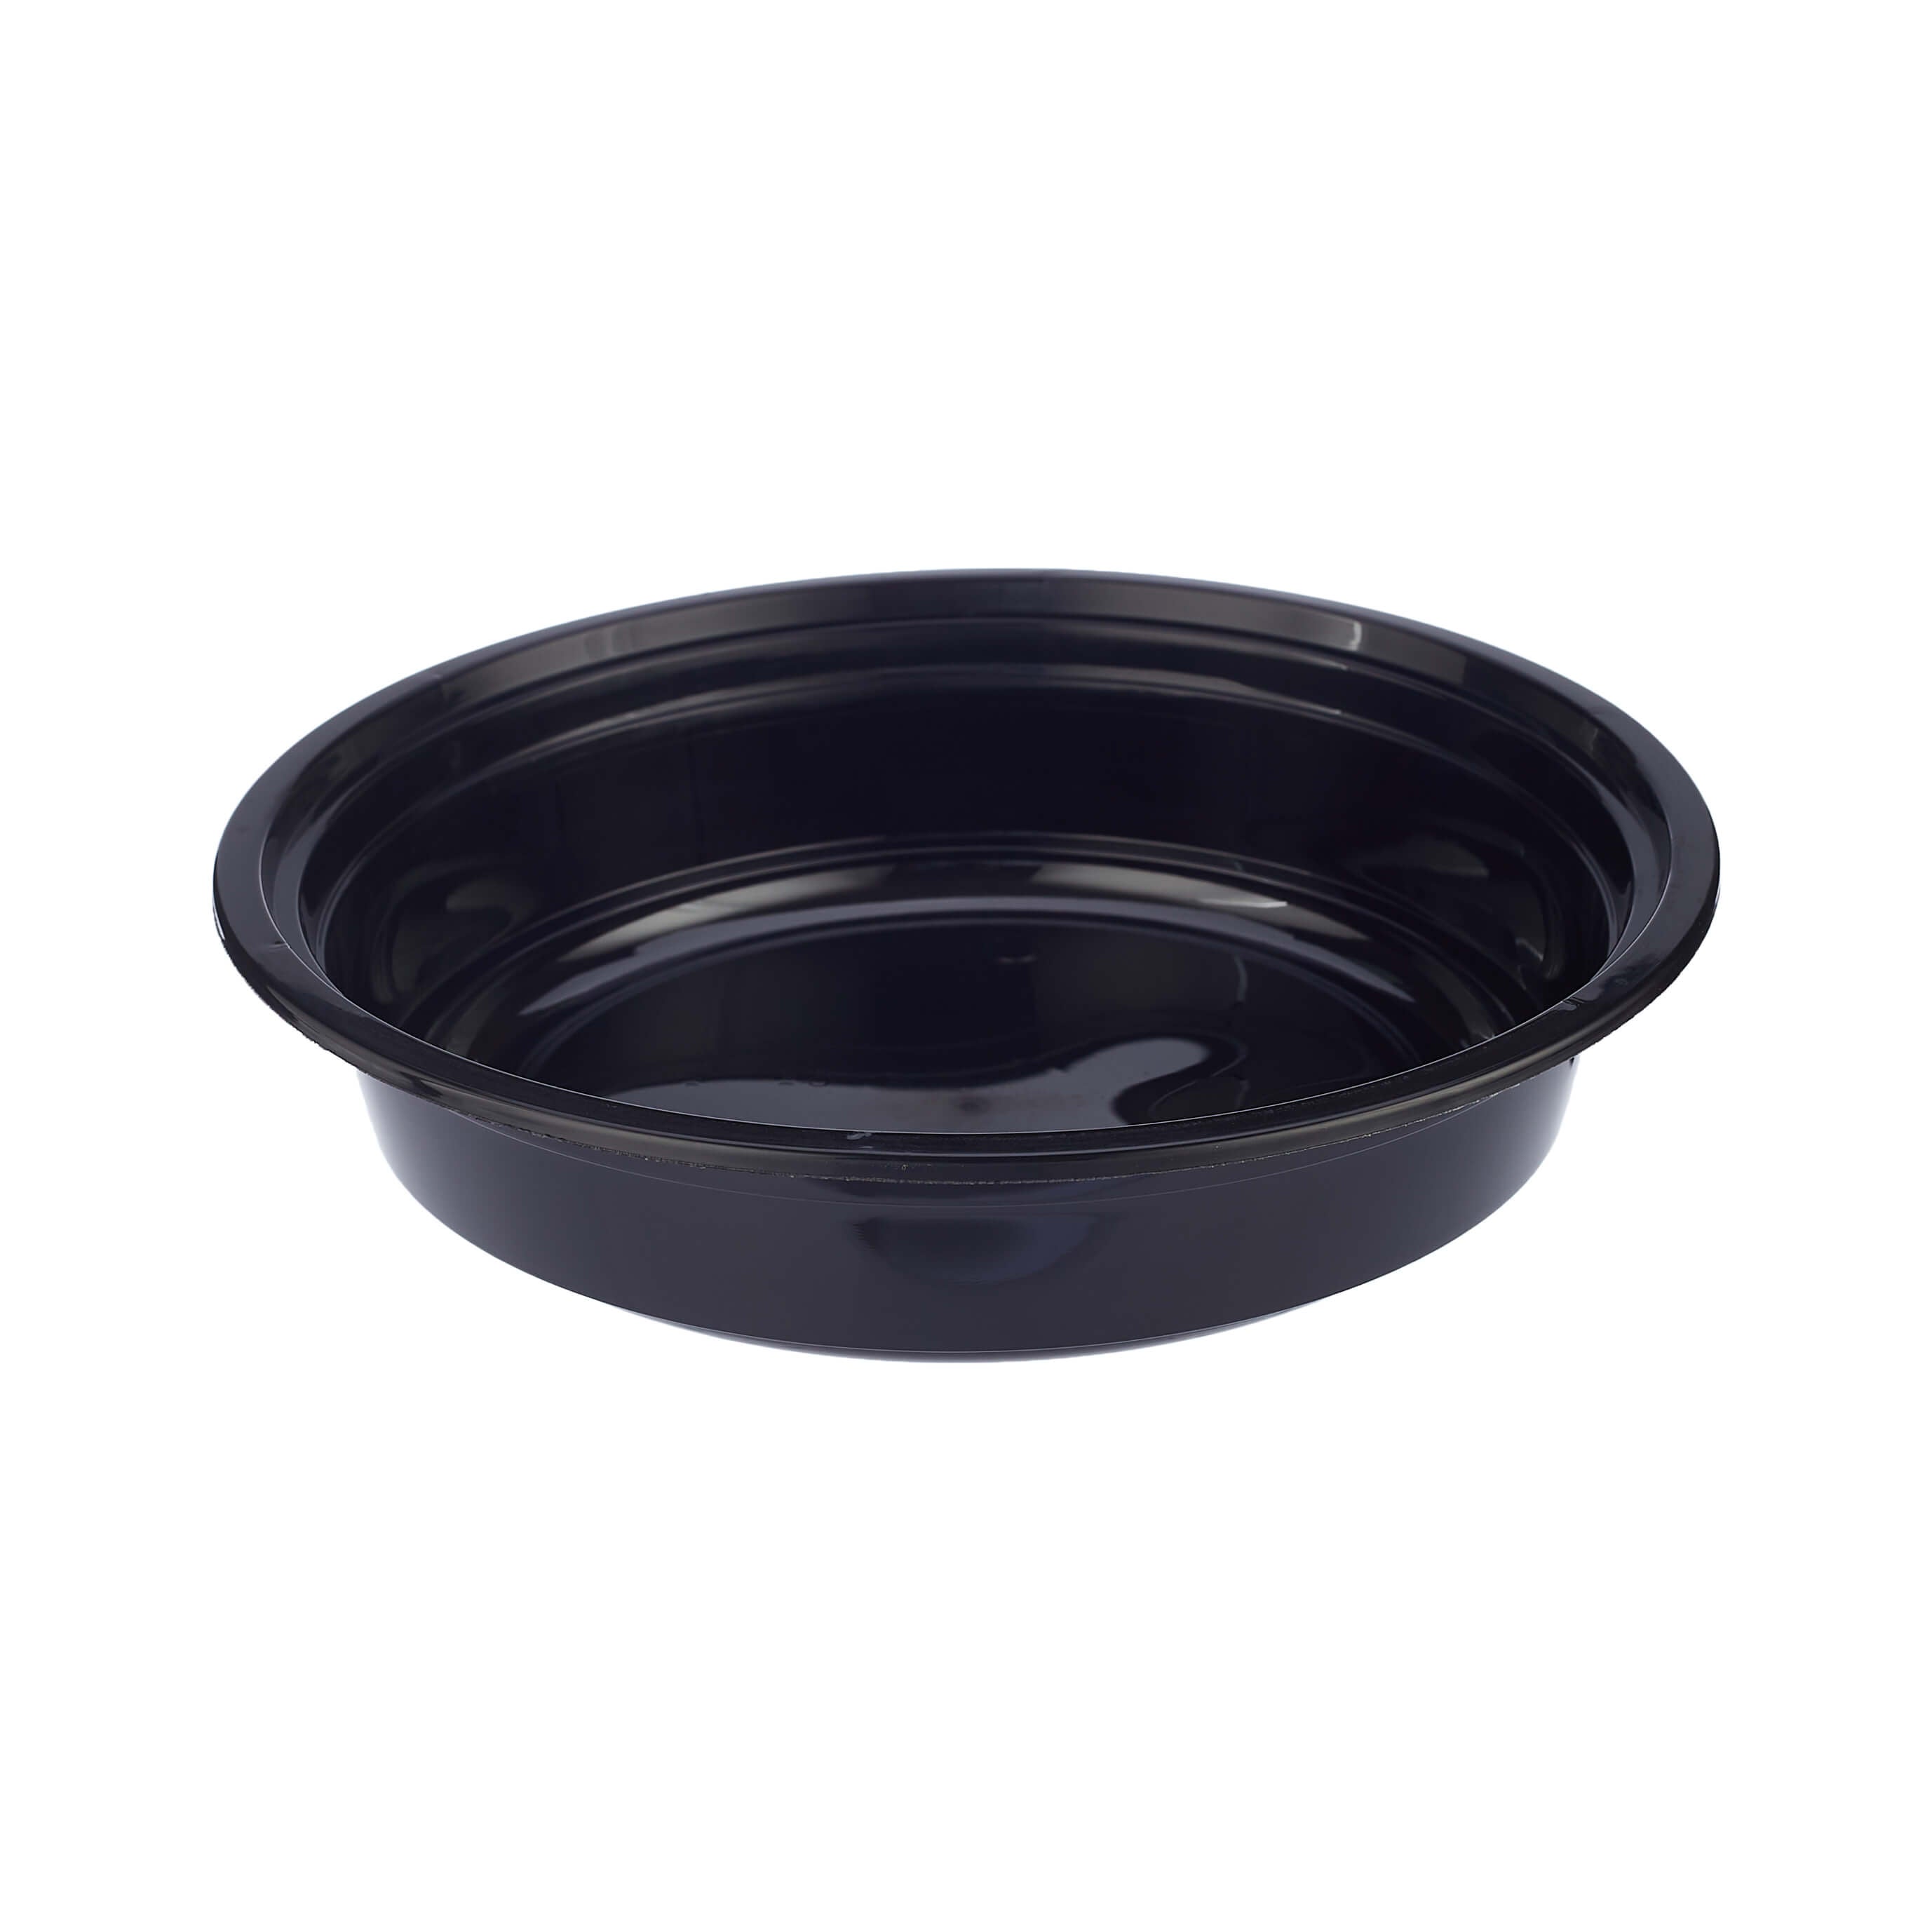 32oz Pho Soup Container Plastic Bowl & Lids Set, Black